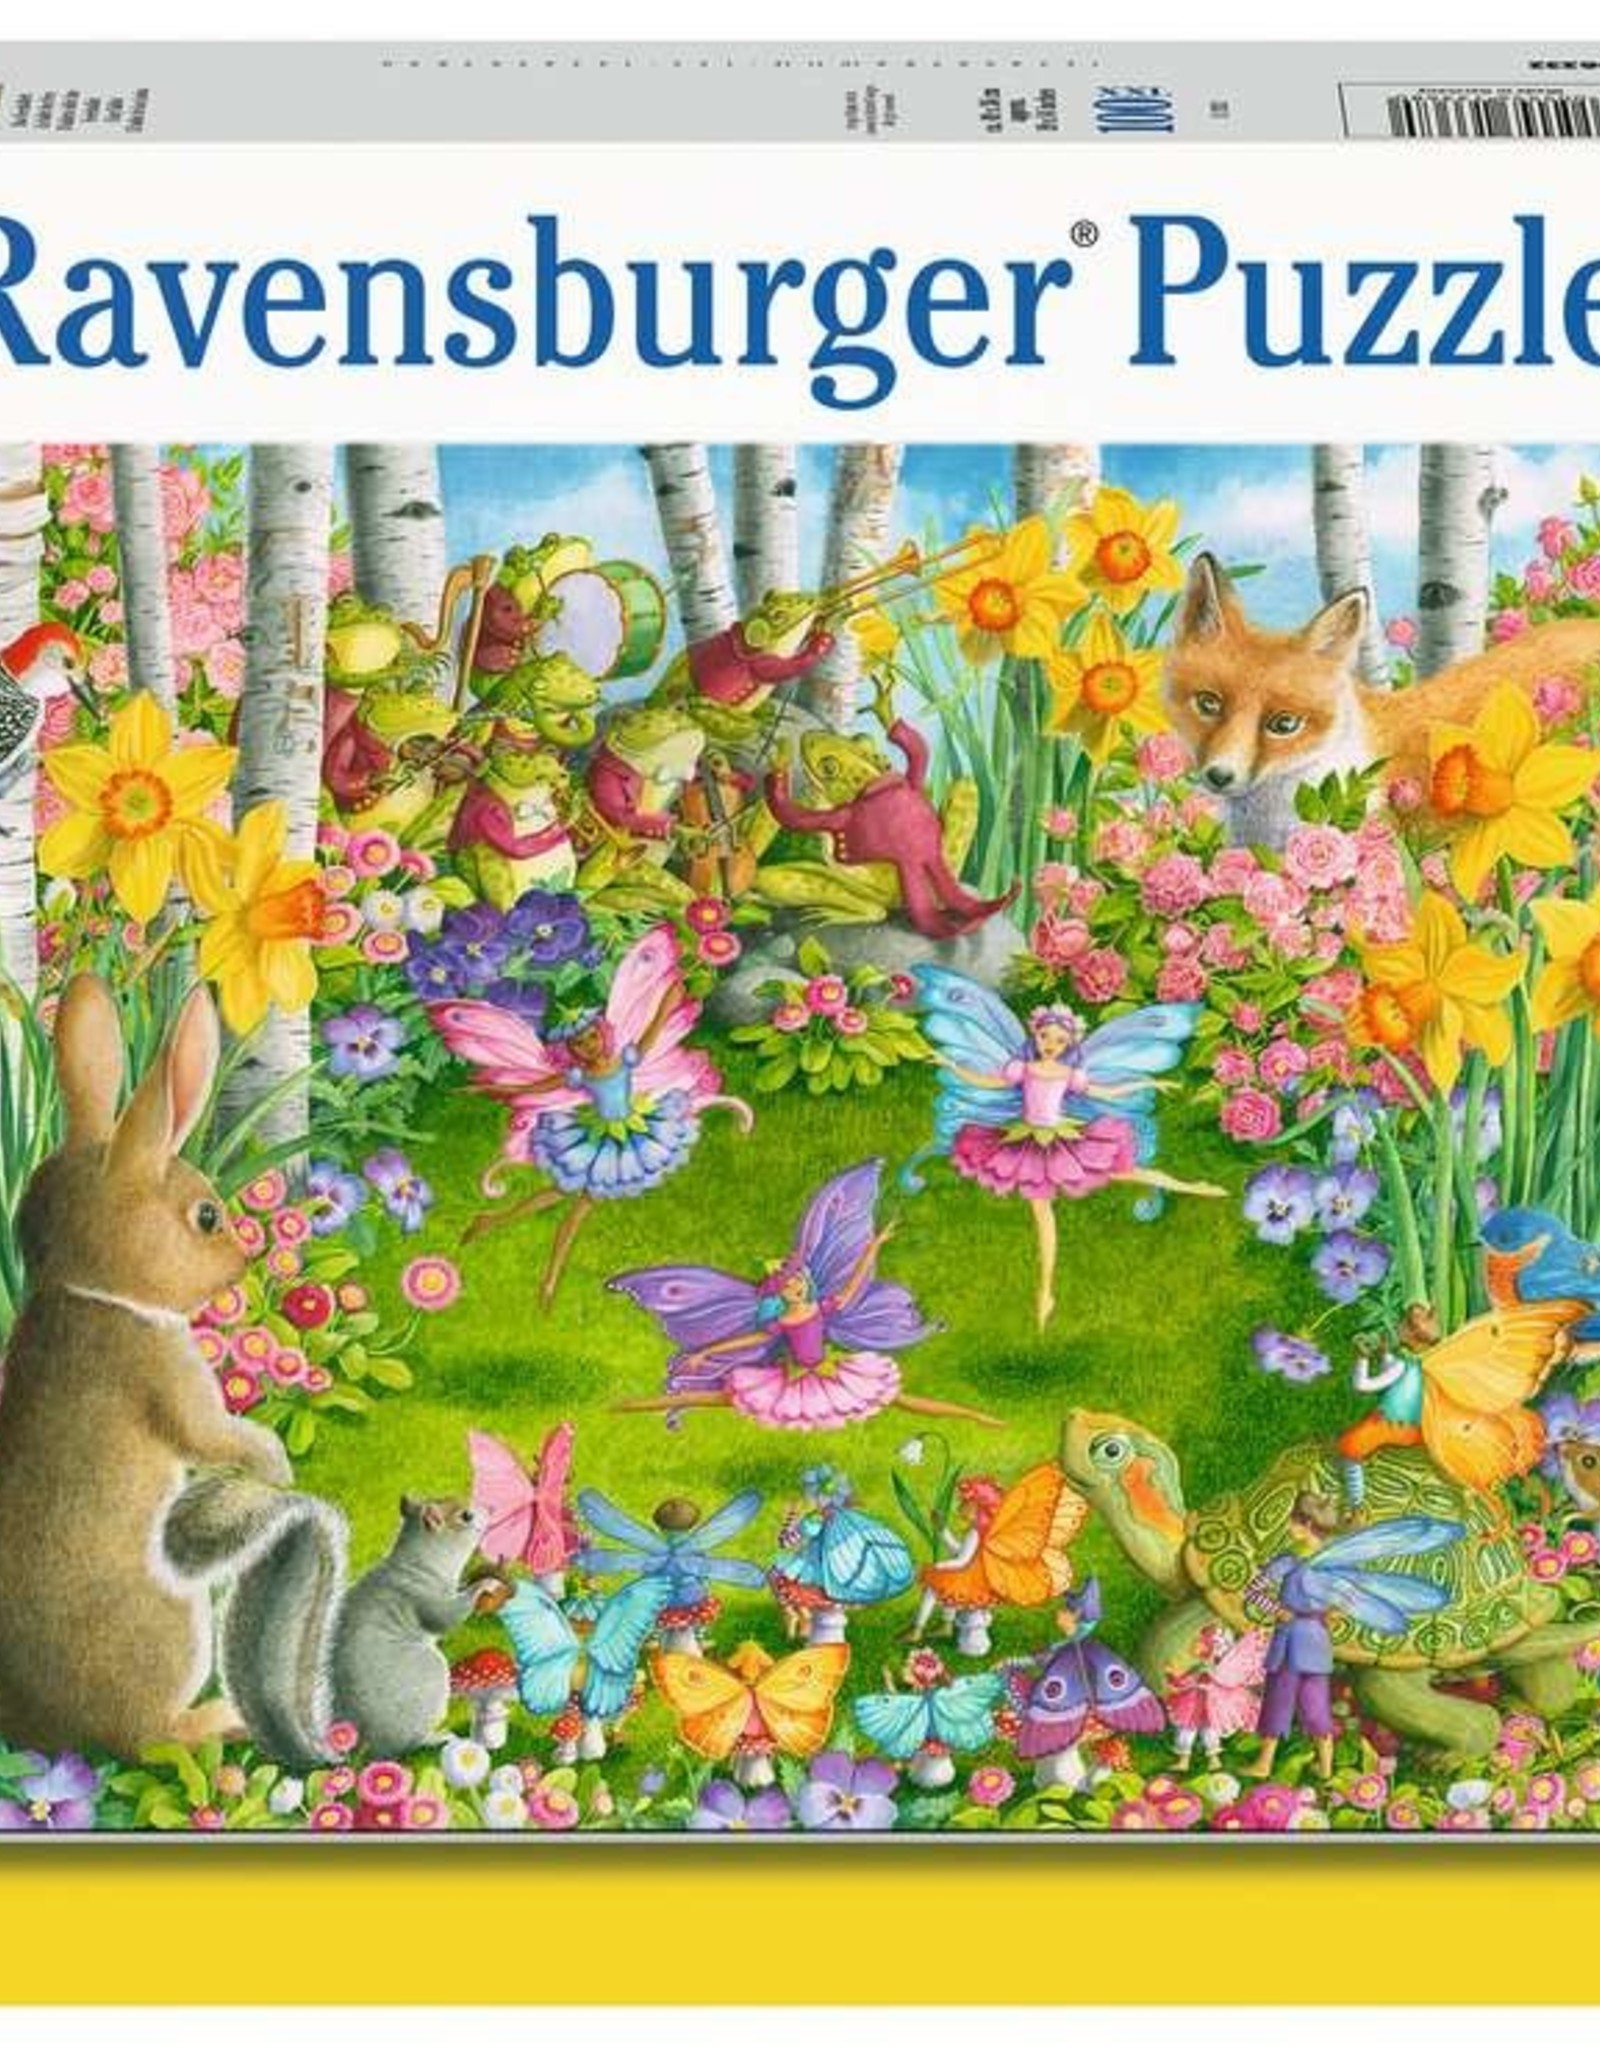 Ravensburger 100pc Puzzle: Fairy Ballet